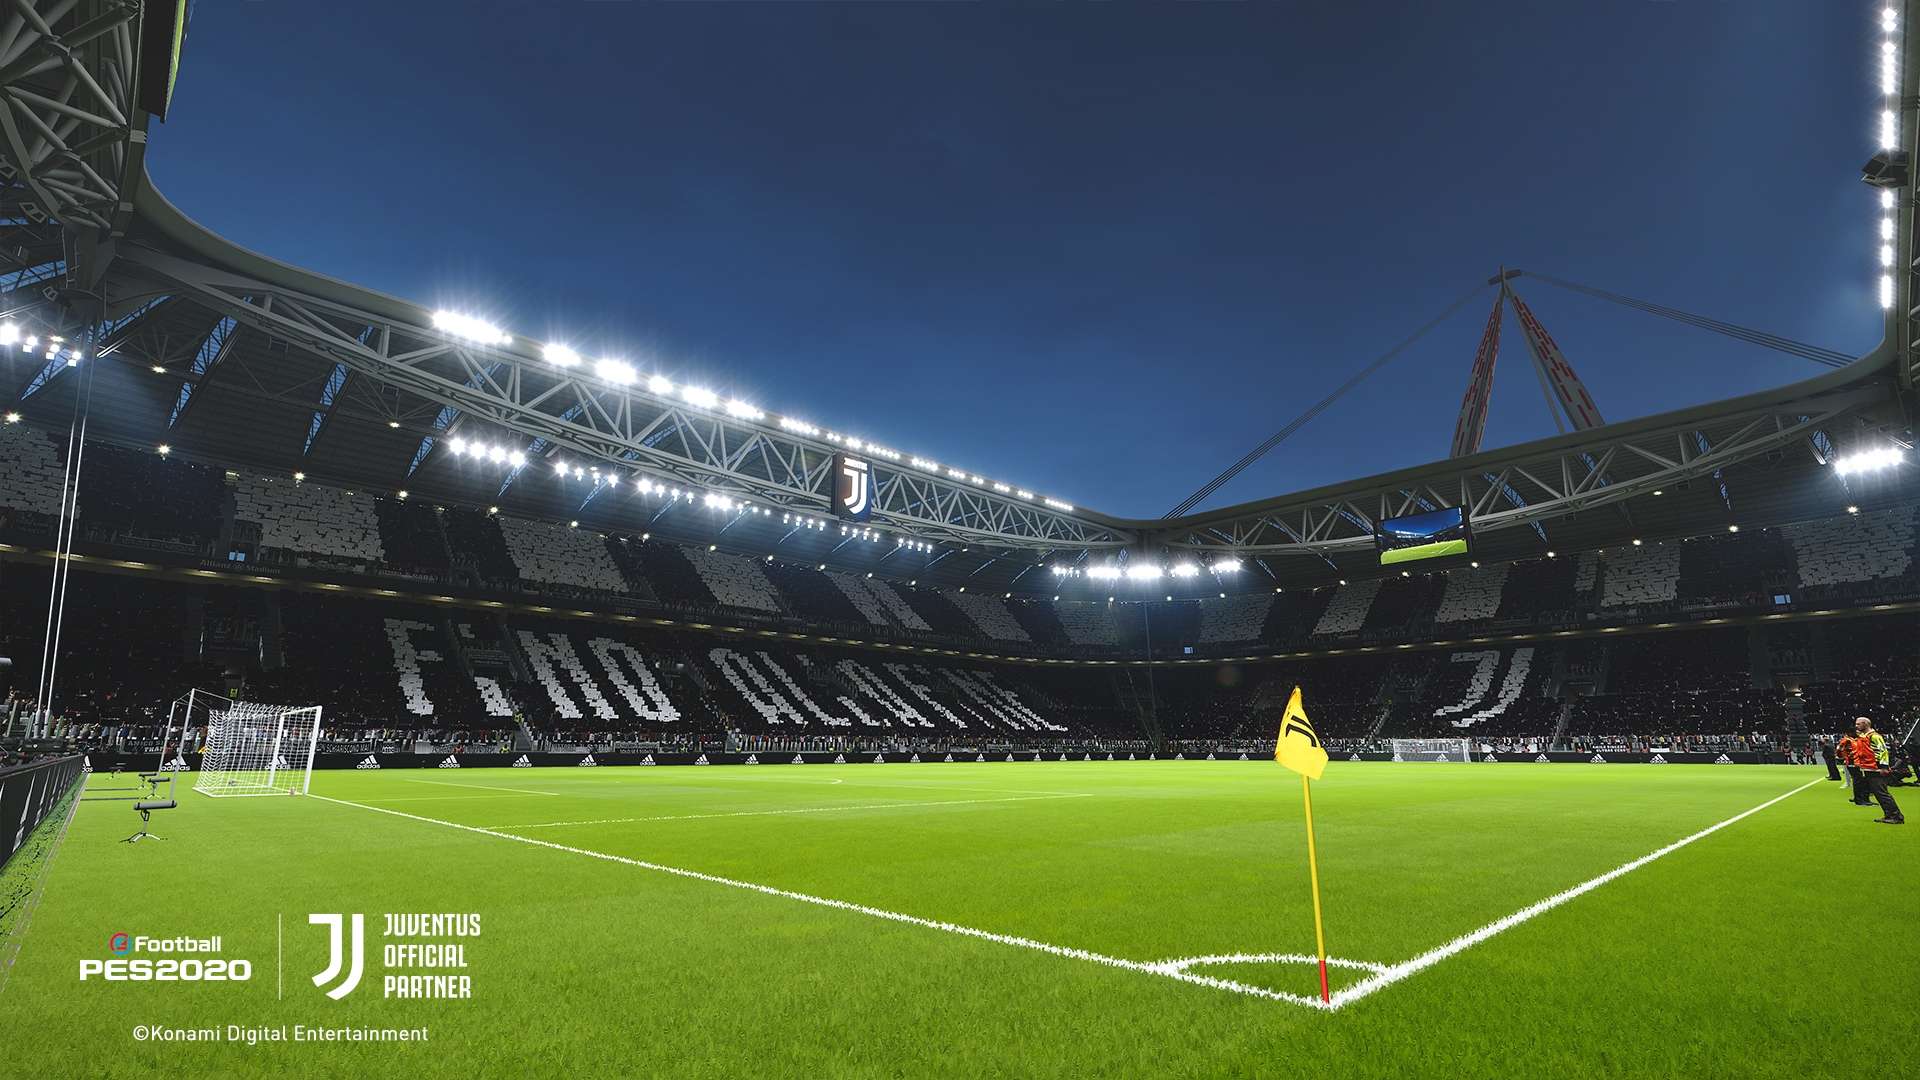 PES 2020 Allianz Stadium